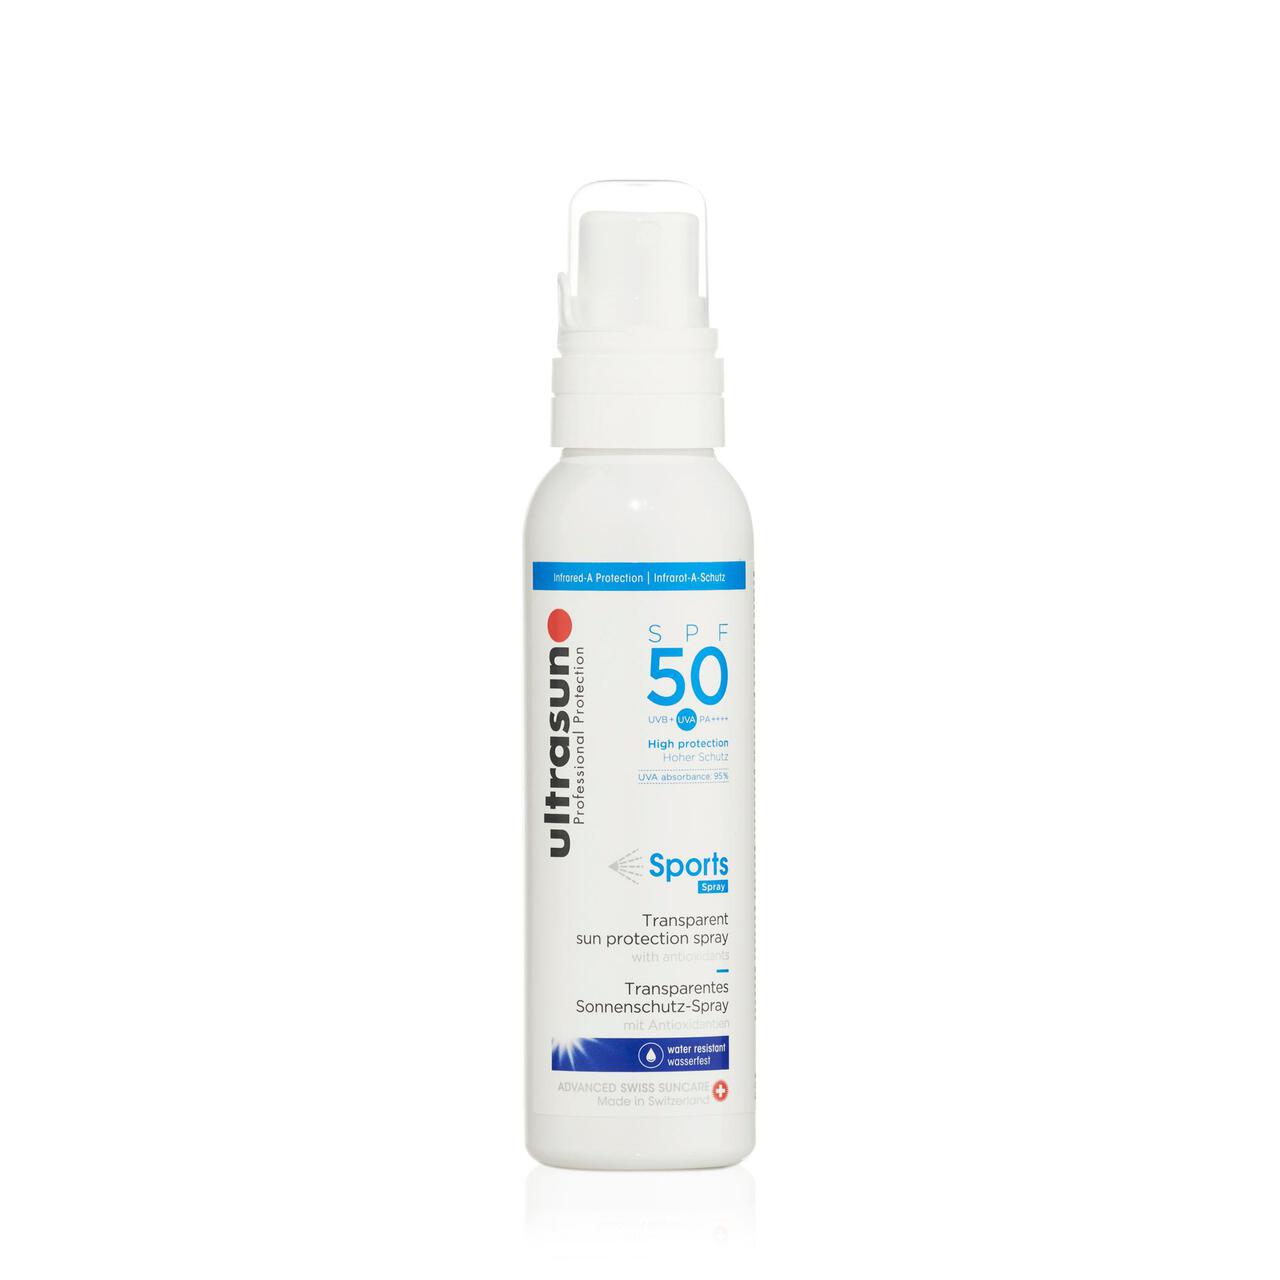 Ultrasun SPF 50 Sports Spray Sunscreen 150ml